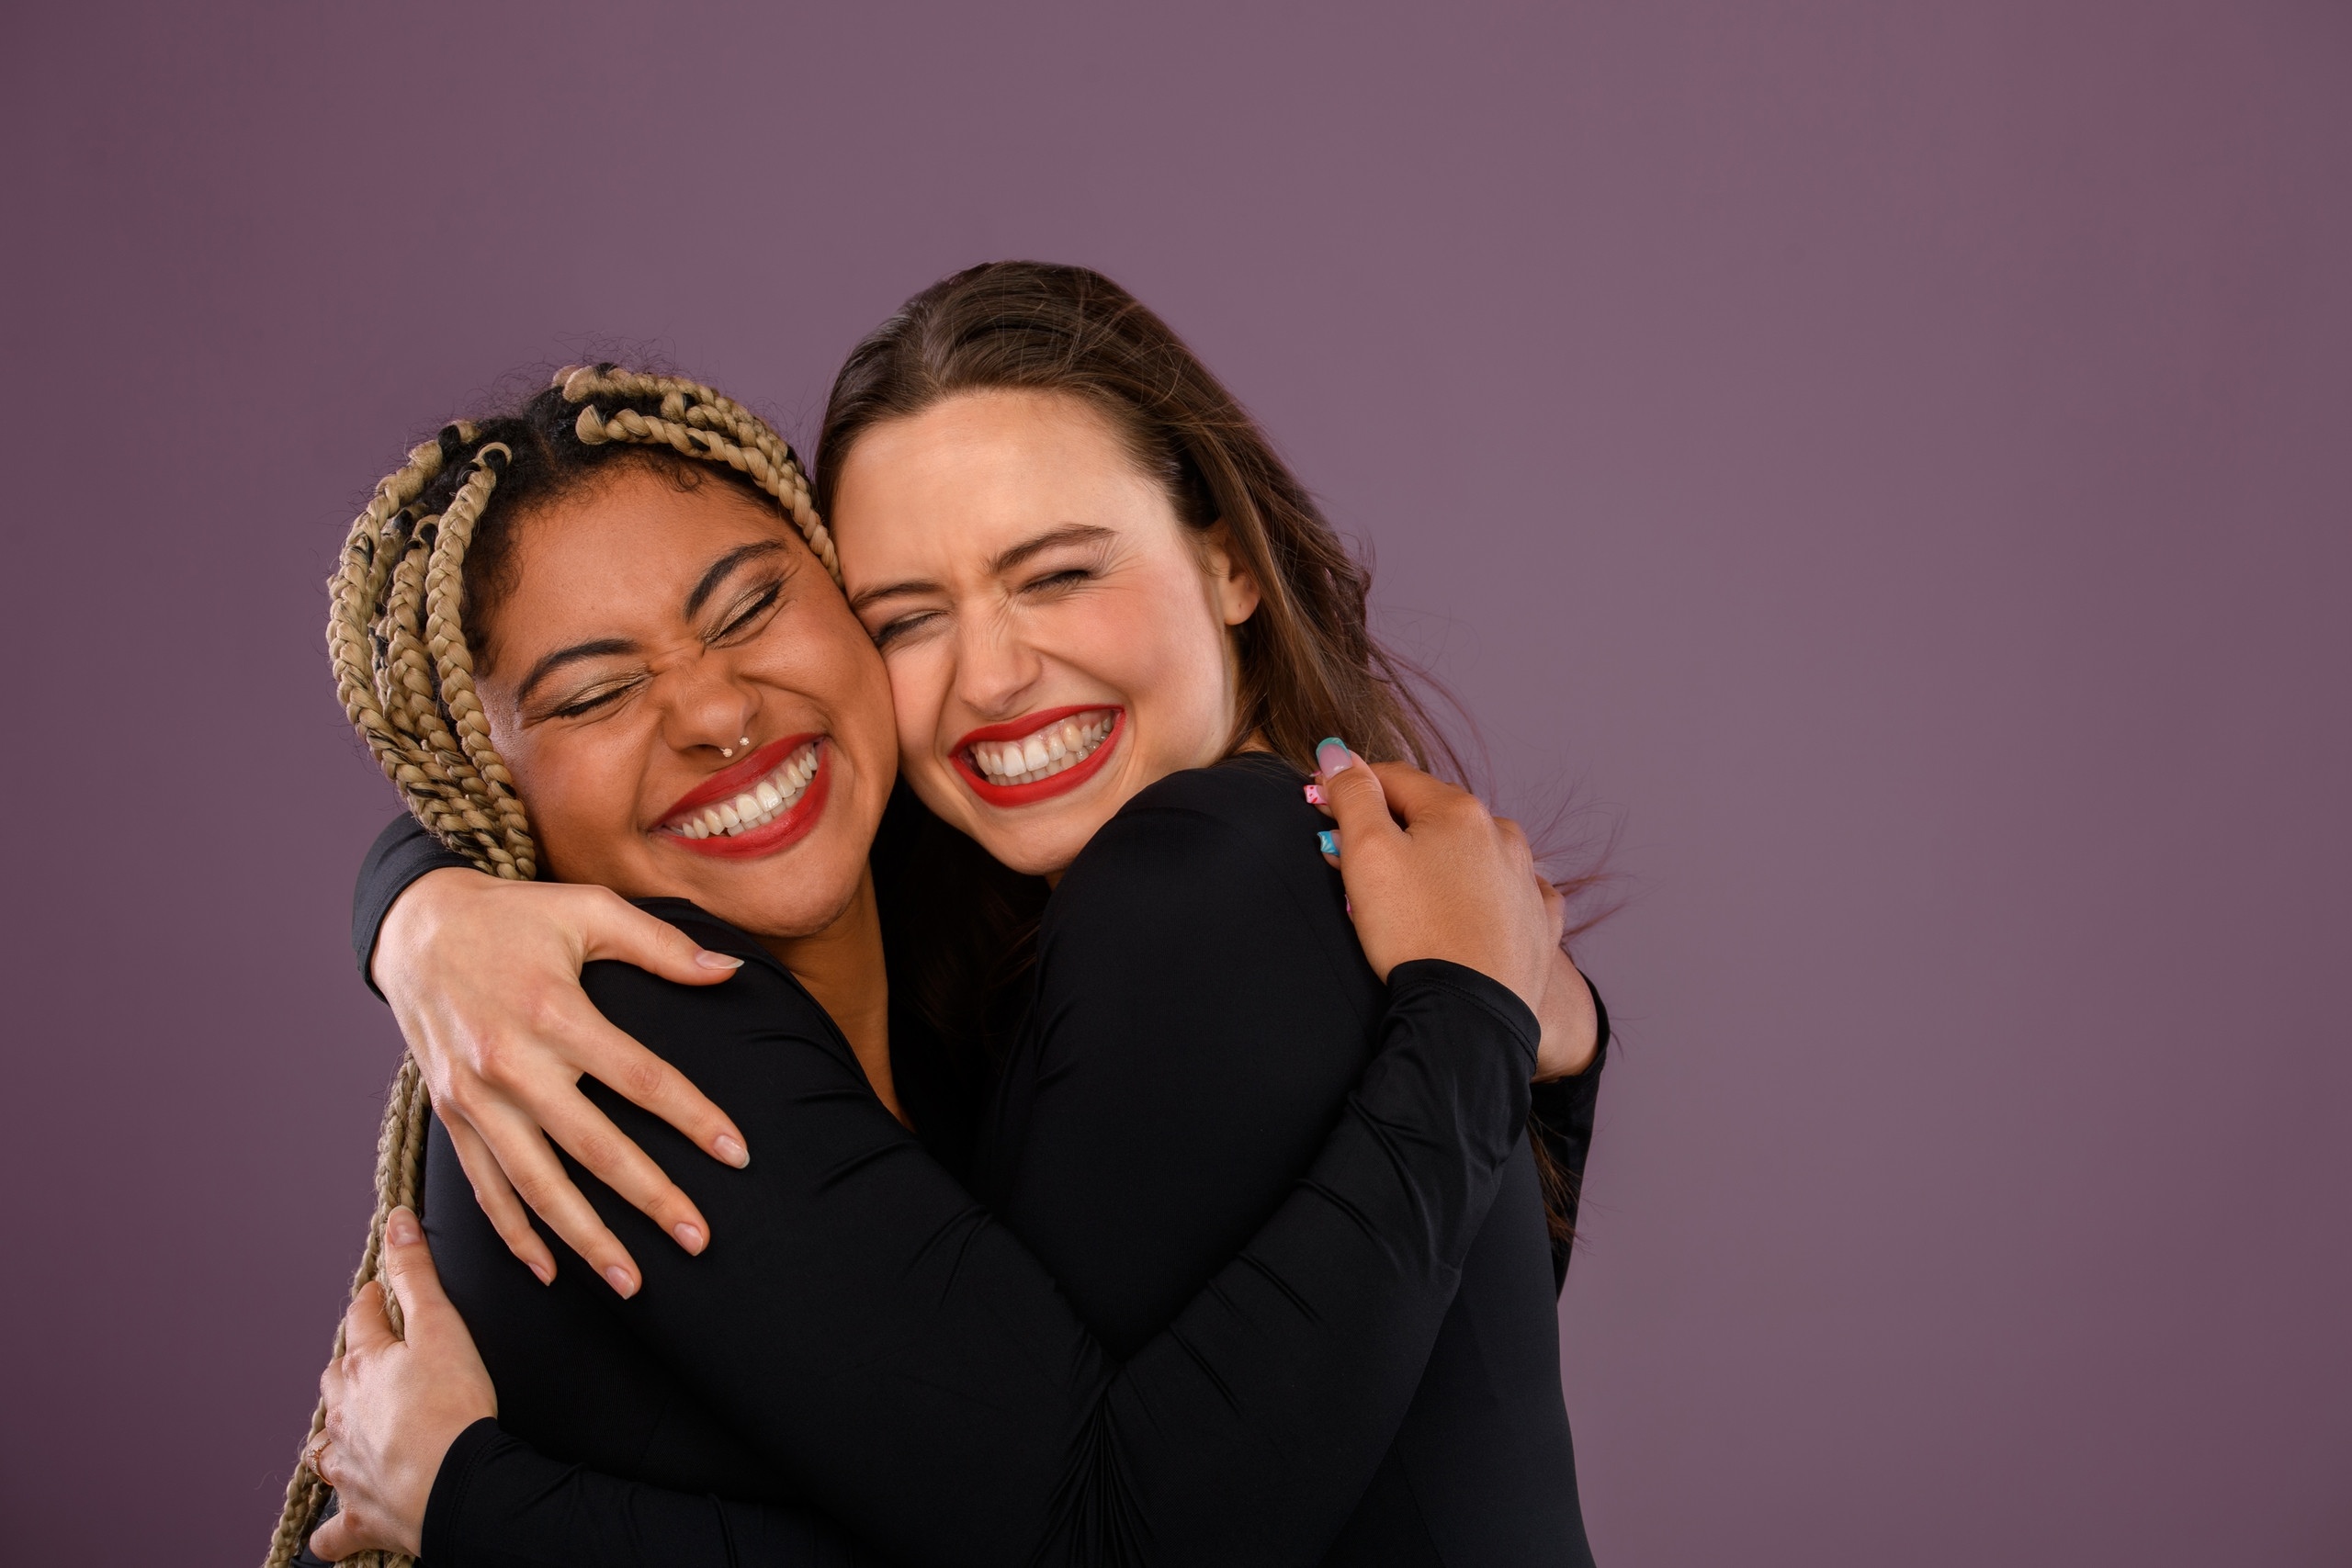 Zwei Freundinnen umarmen sich. Umarmt euch öfter - nicht nur zum Weltknuddeltag am 21. Januar! Warum Nähe ein Grundbedürfnis und Kuscheln gesund ist. | Bild: colourbox.com